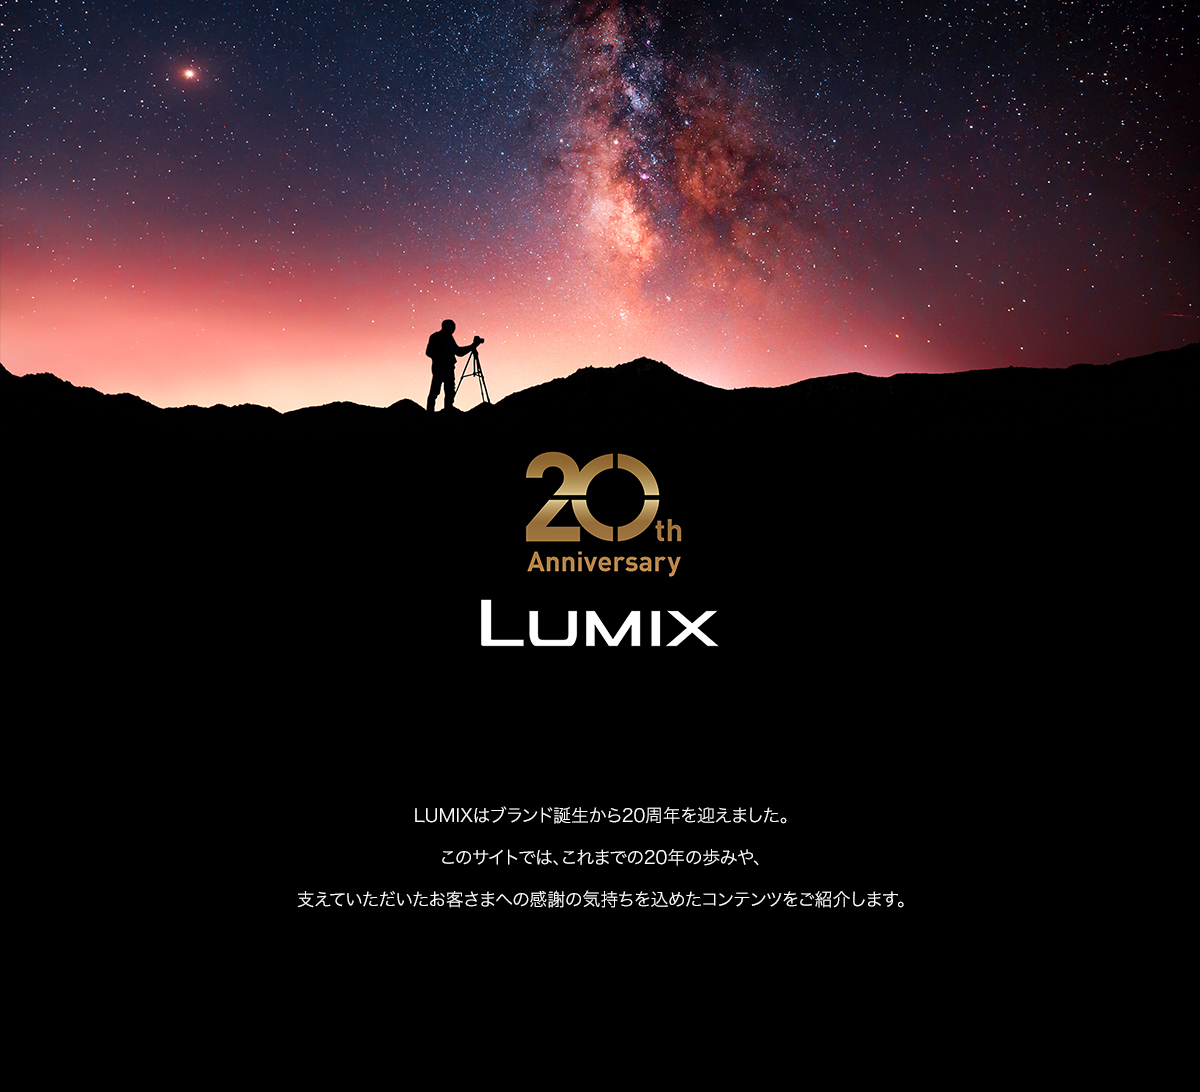 LUMIX 20周年サイト メインビジュアル